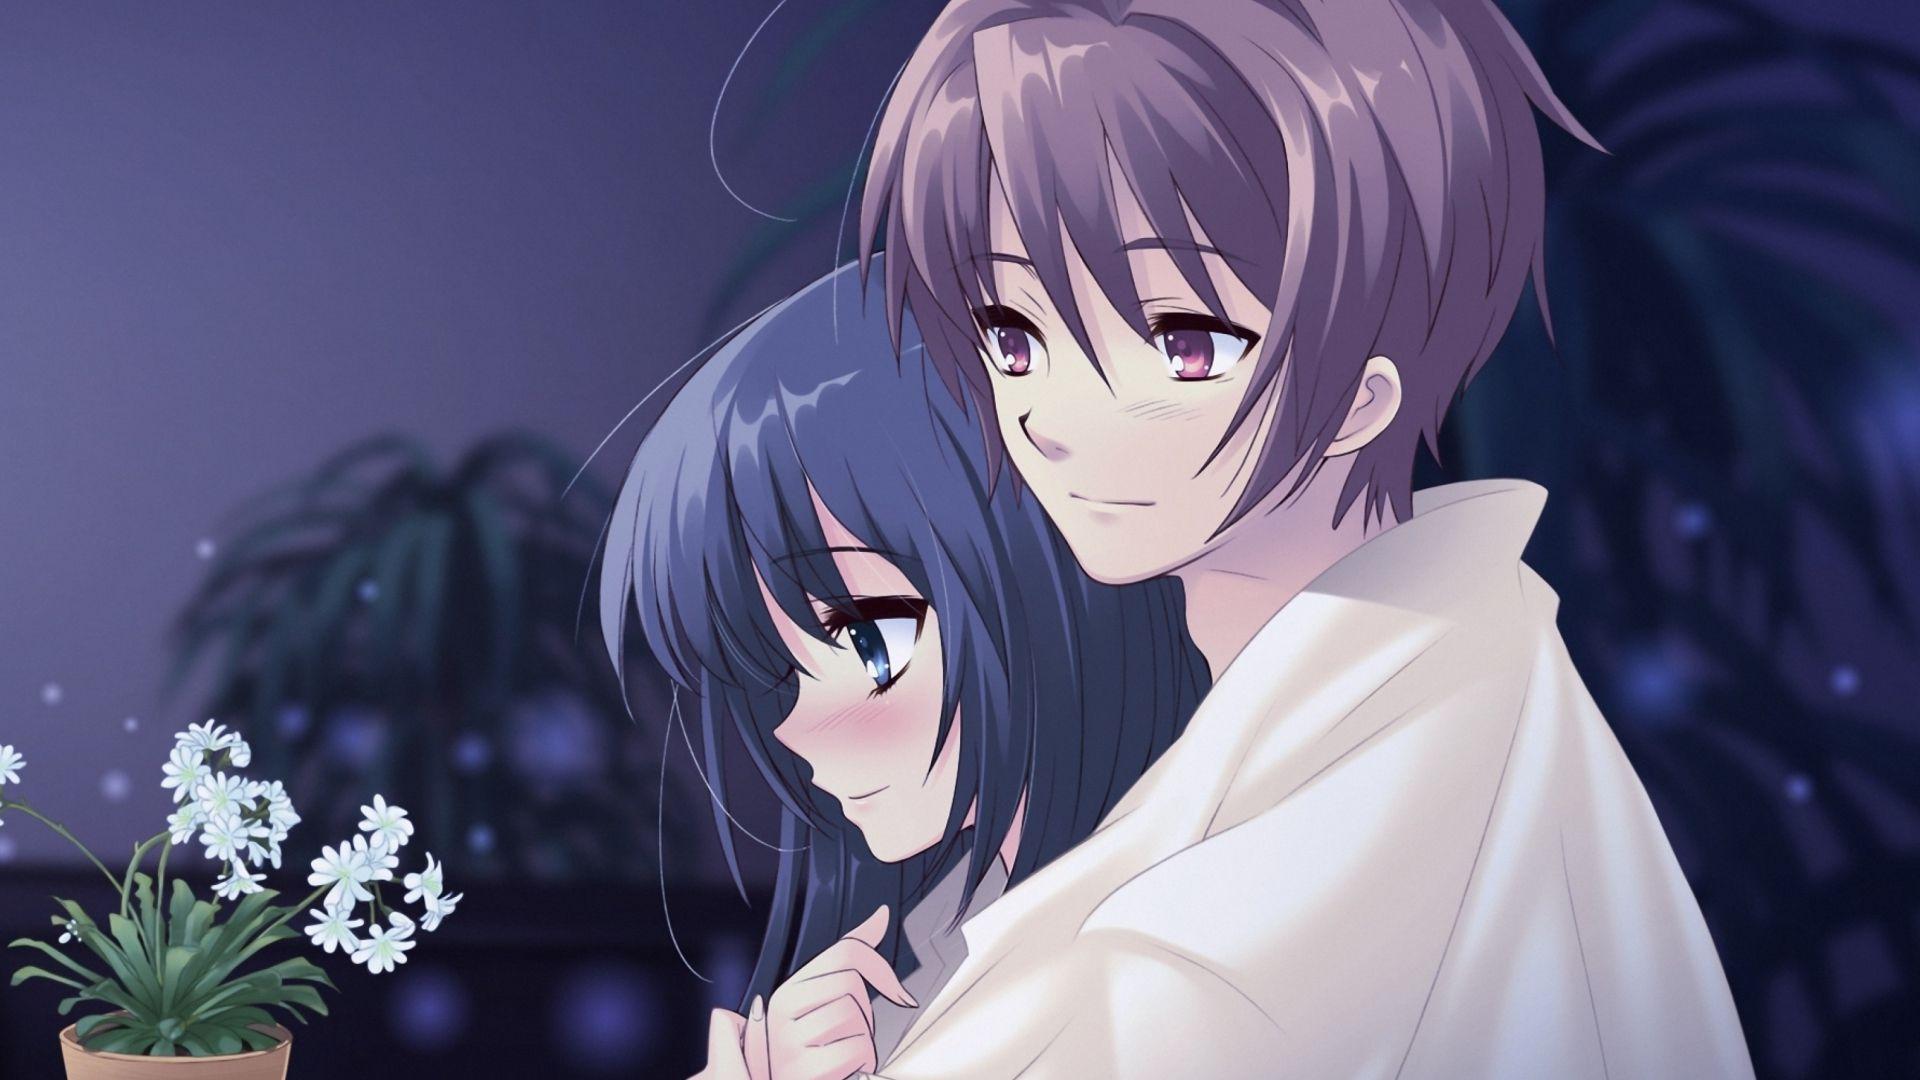 Beautiful Anime Couples Wallpapers - Top Những Hình Ảnh Đẹp